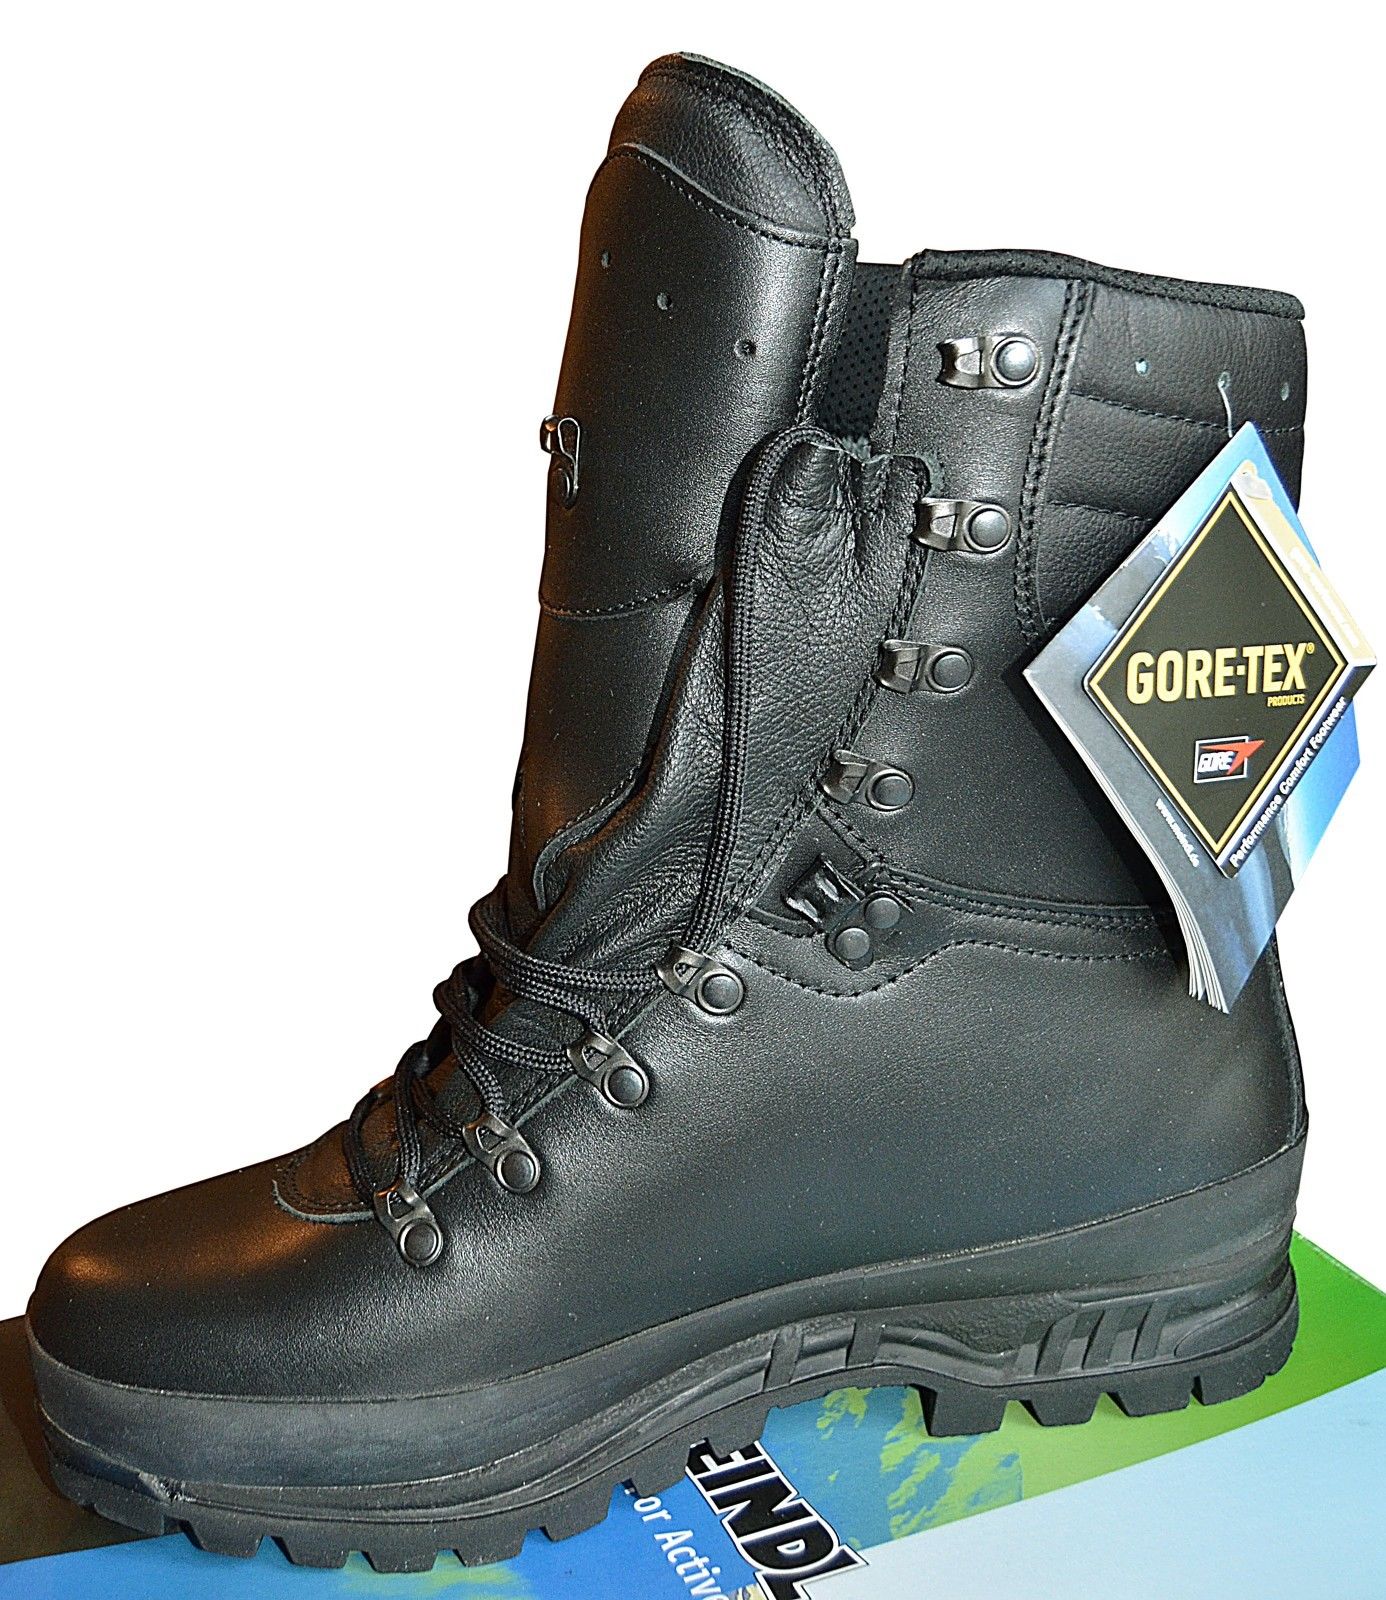 lof Bestuurbaar Verder Feline Shoes / Rangers / Meindl Response Boots, Gore -Tex - Koud weer -  Frans leger eskb501mndl : securemail.fr